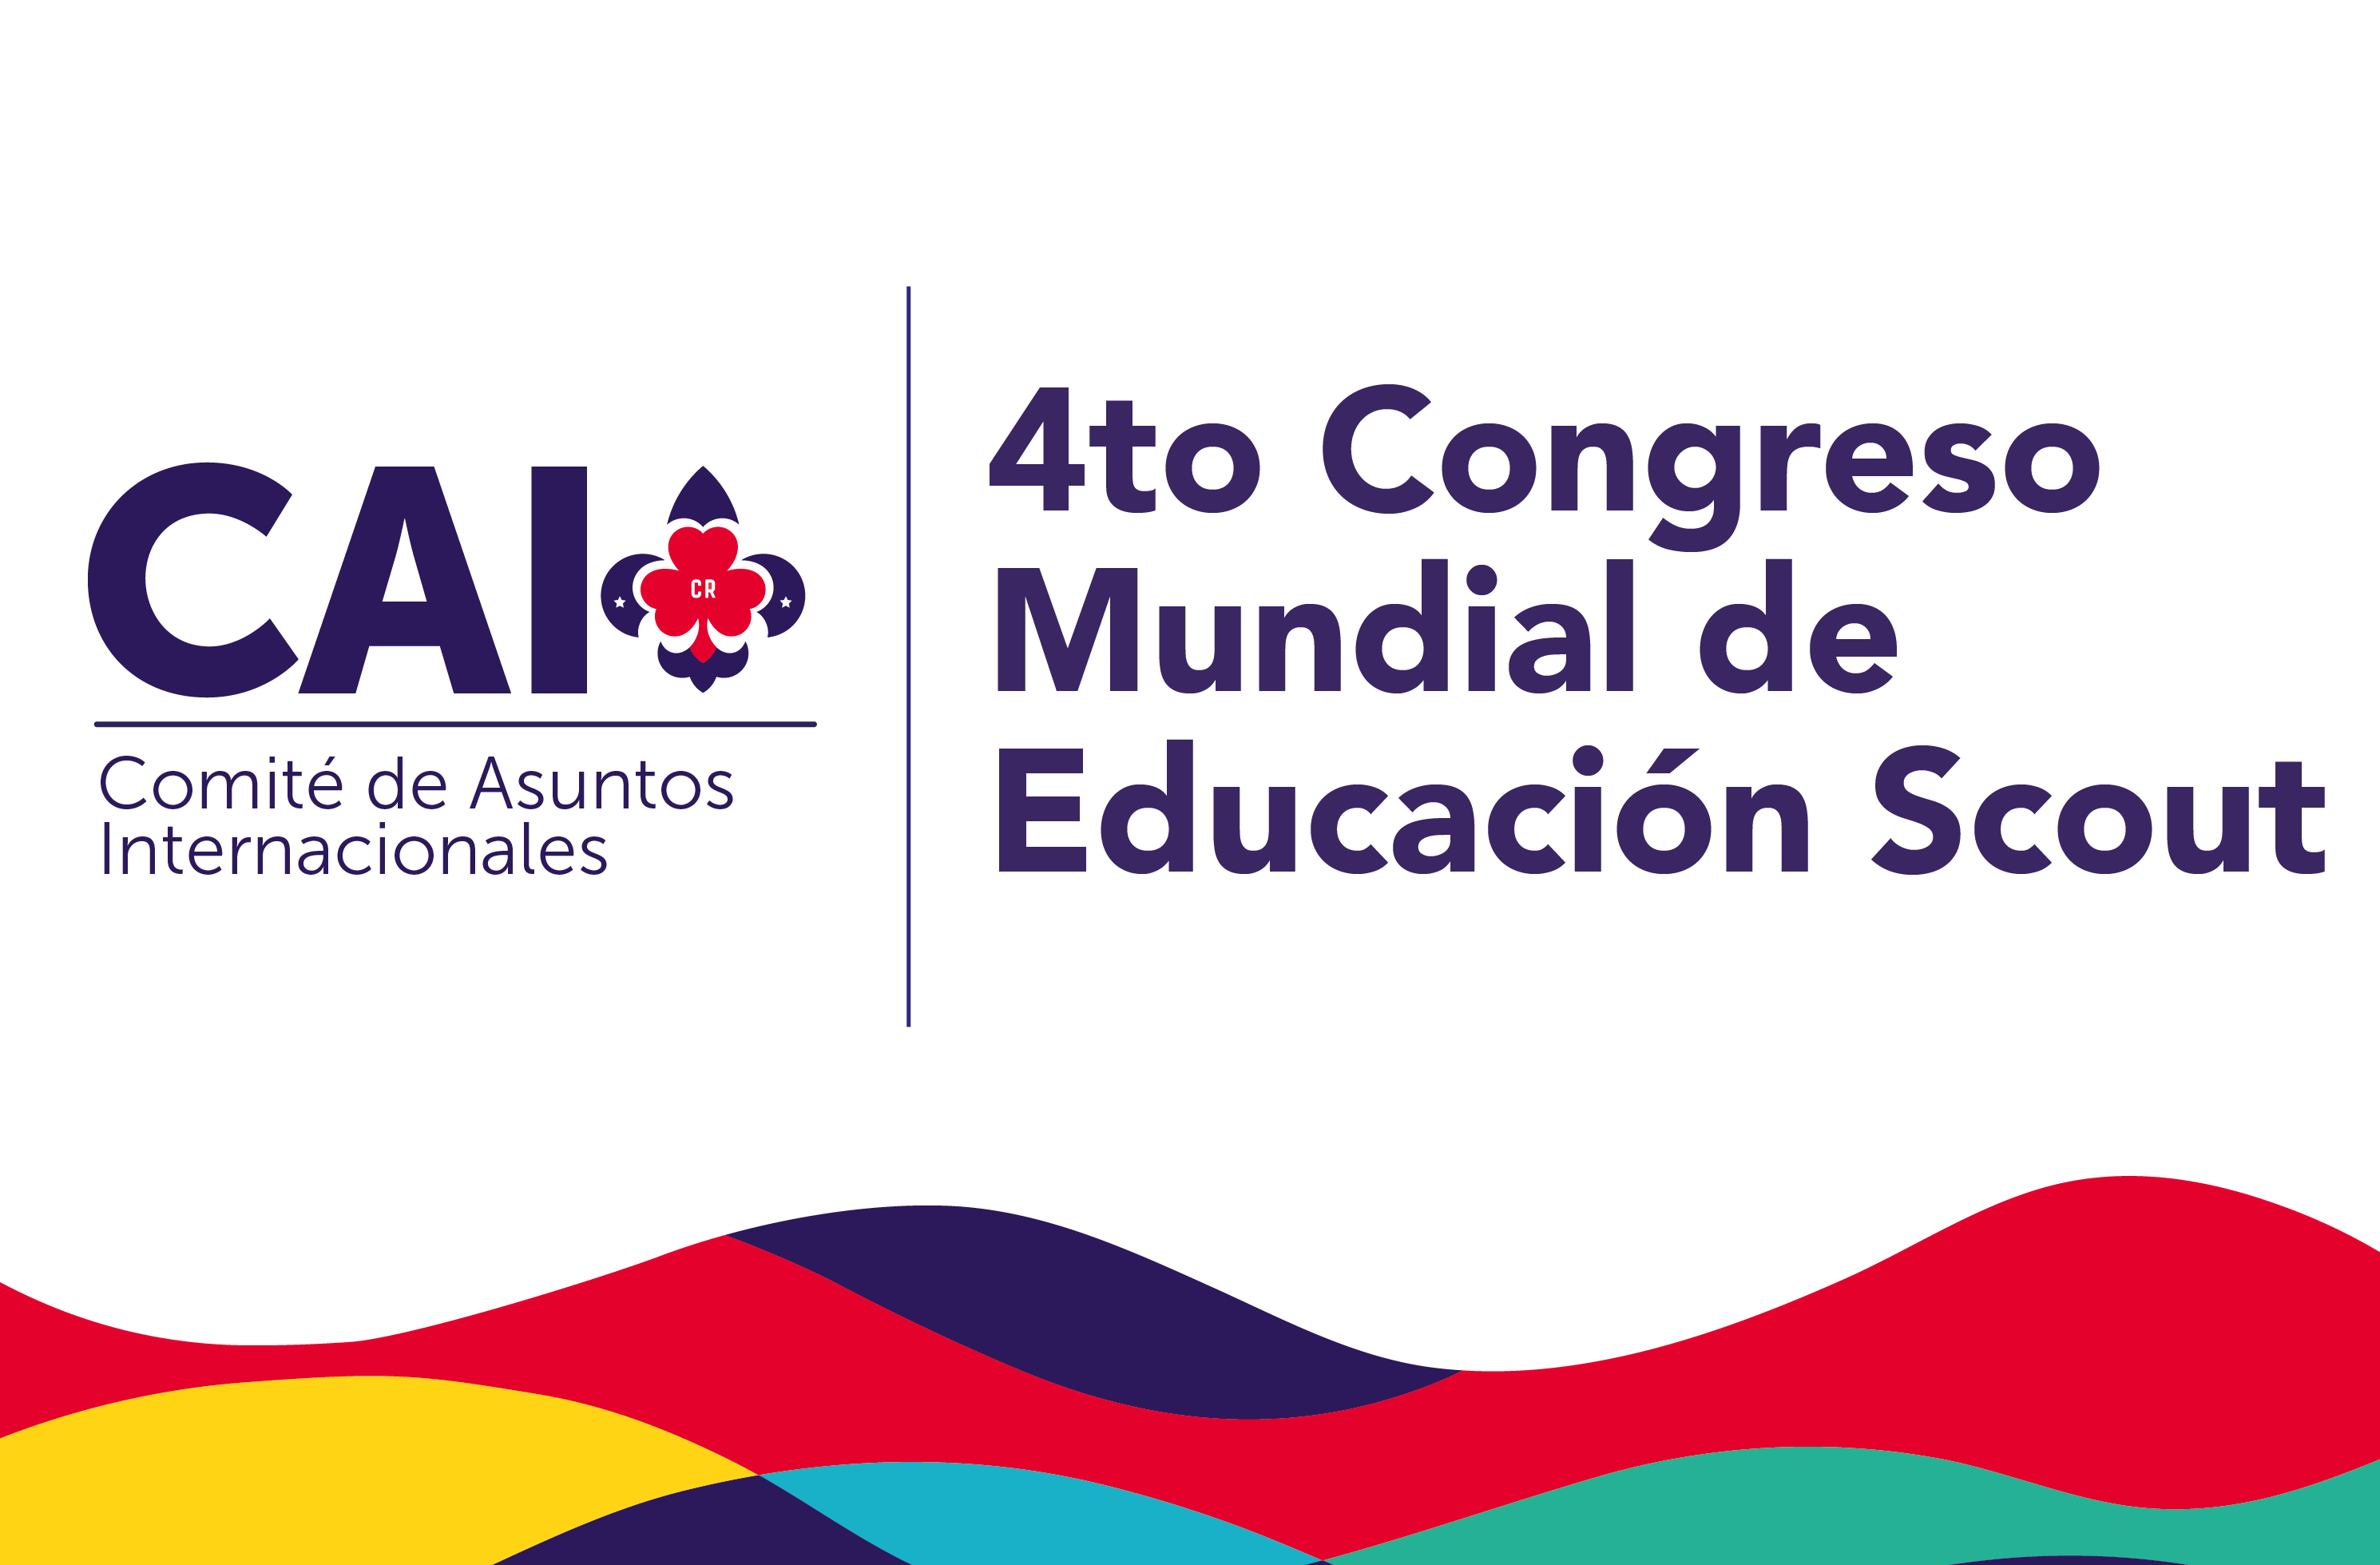 4to Congreso Mundial de Educación Scout